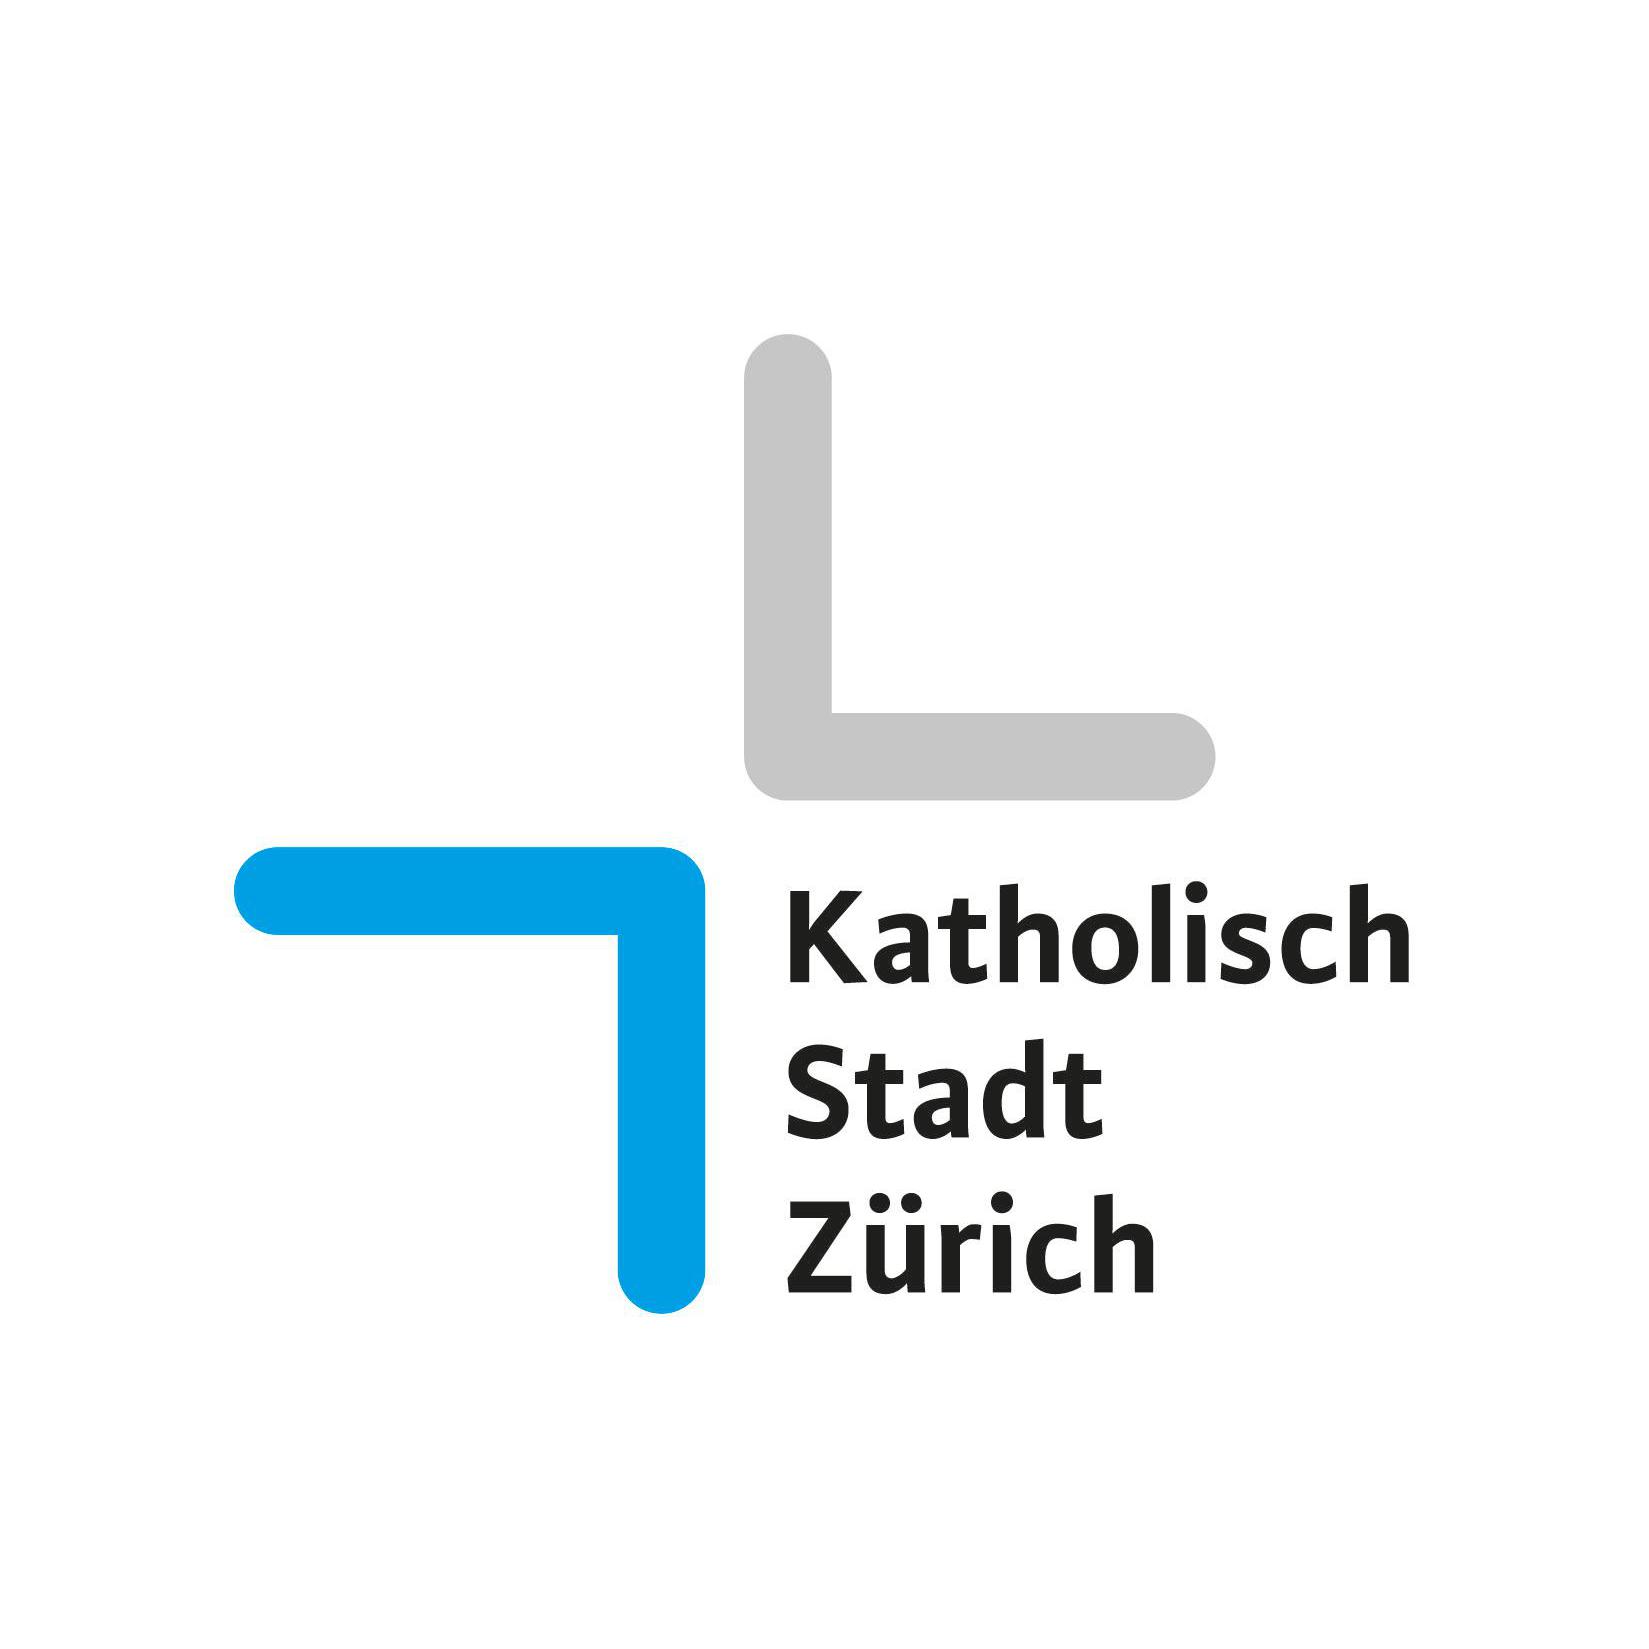 Katholisch Stadt Zürich Logo